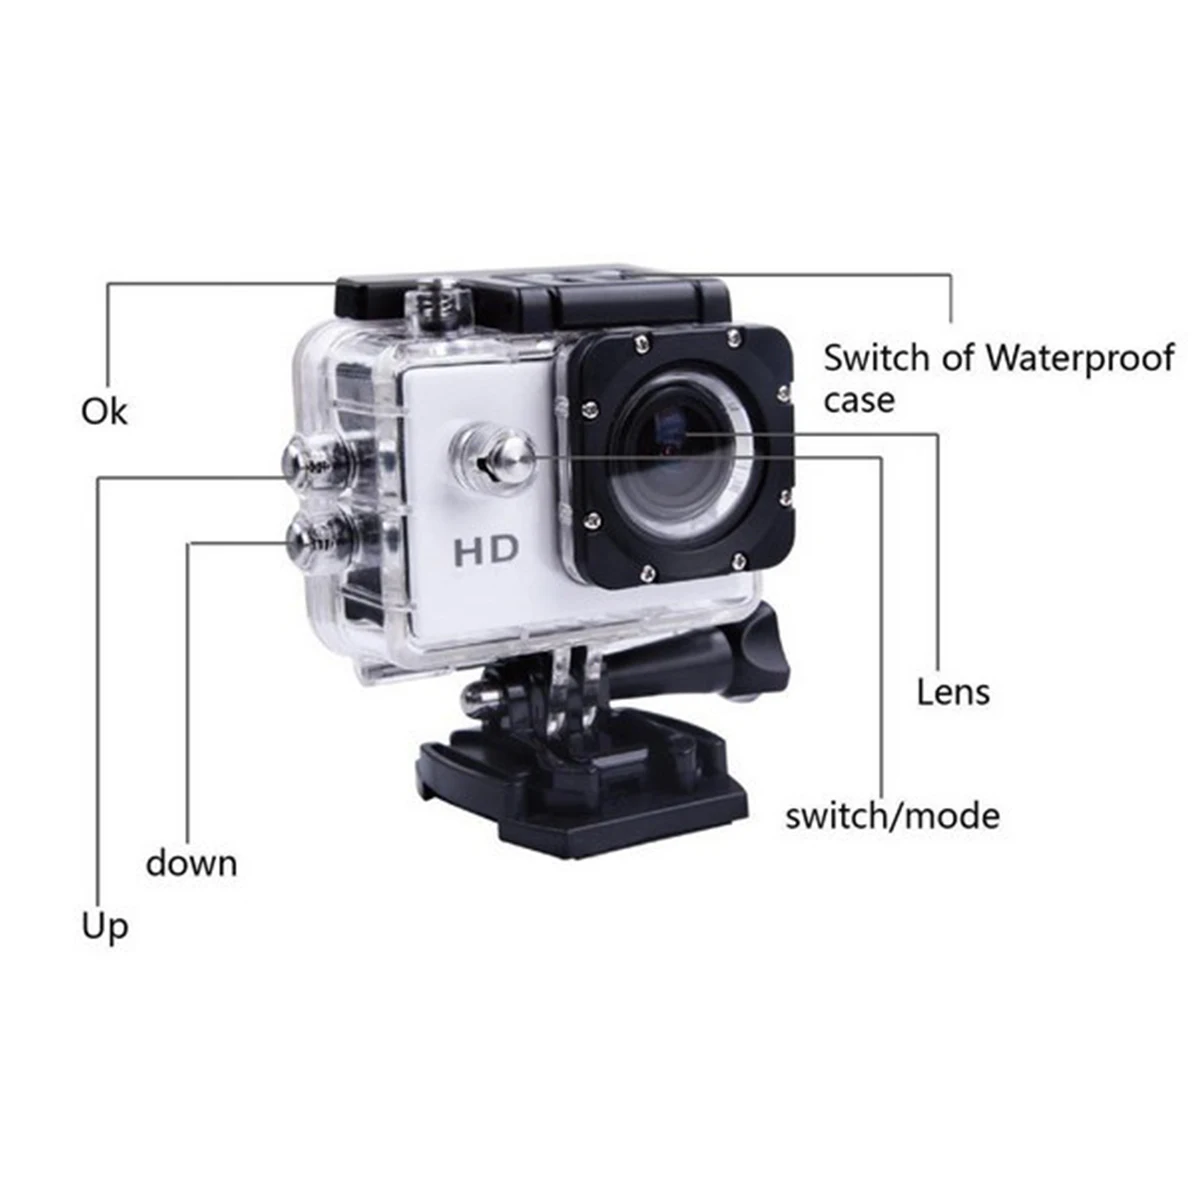 Фристайл 2-дюймовый ЖК-дисплей 640P* 480P экшн Камера, позволяющая погружаться под воду на глубину до 30 м Водонепроницаемый(устройство цифровой записи) для занятий подводным, шлем Камера DV Спортивная камера SJcam